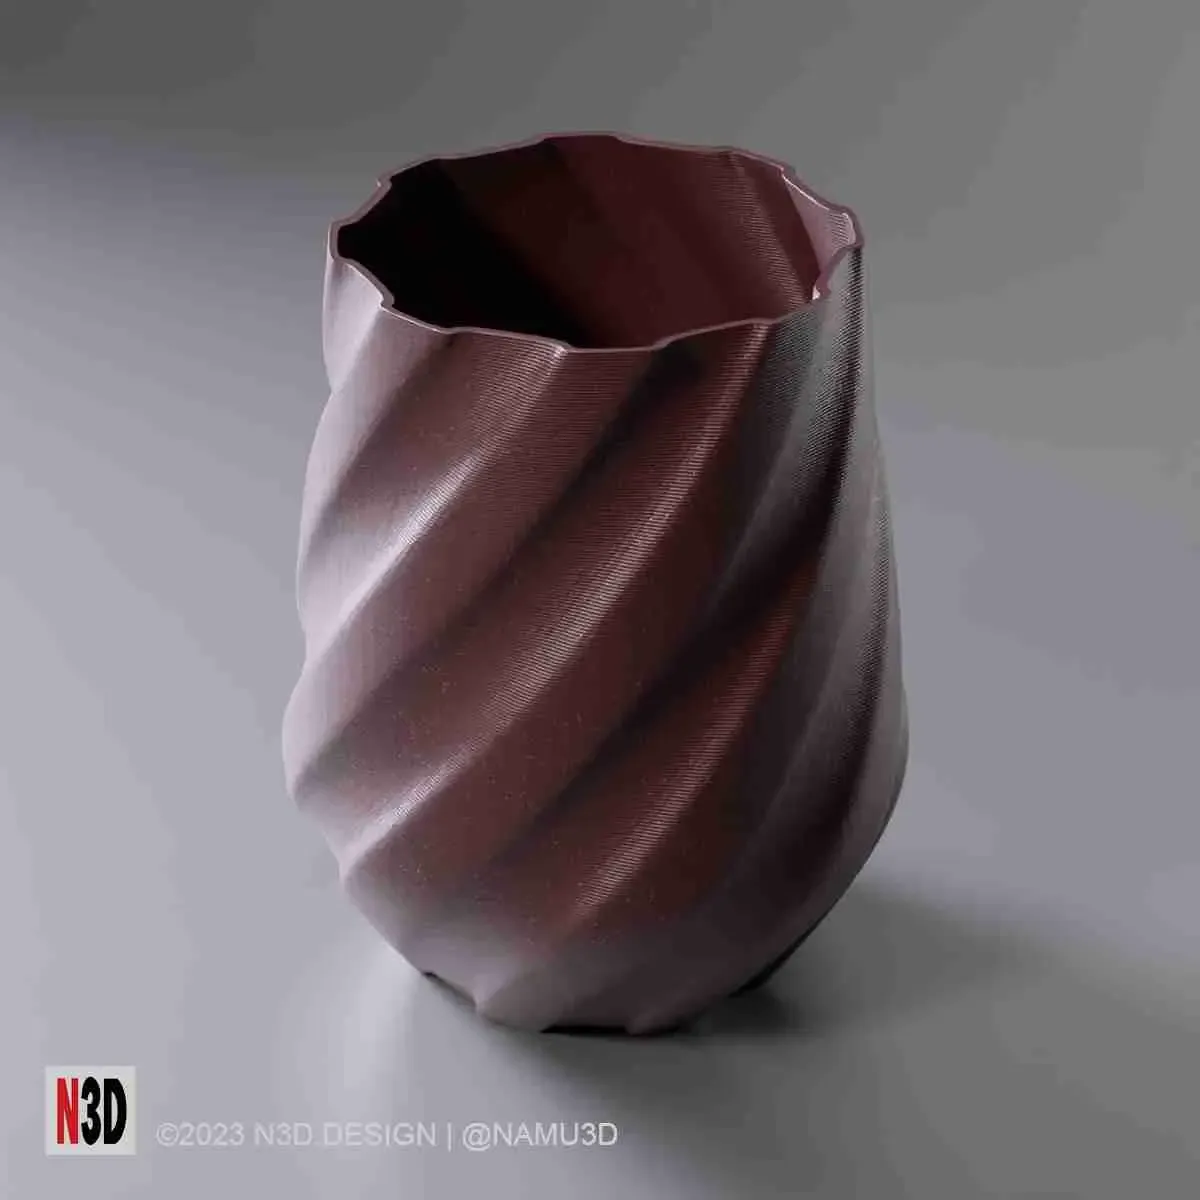 Vase 0020 B - Twisted cone vase